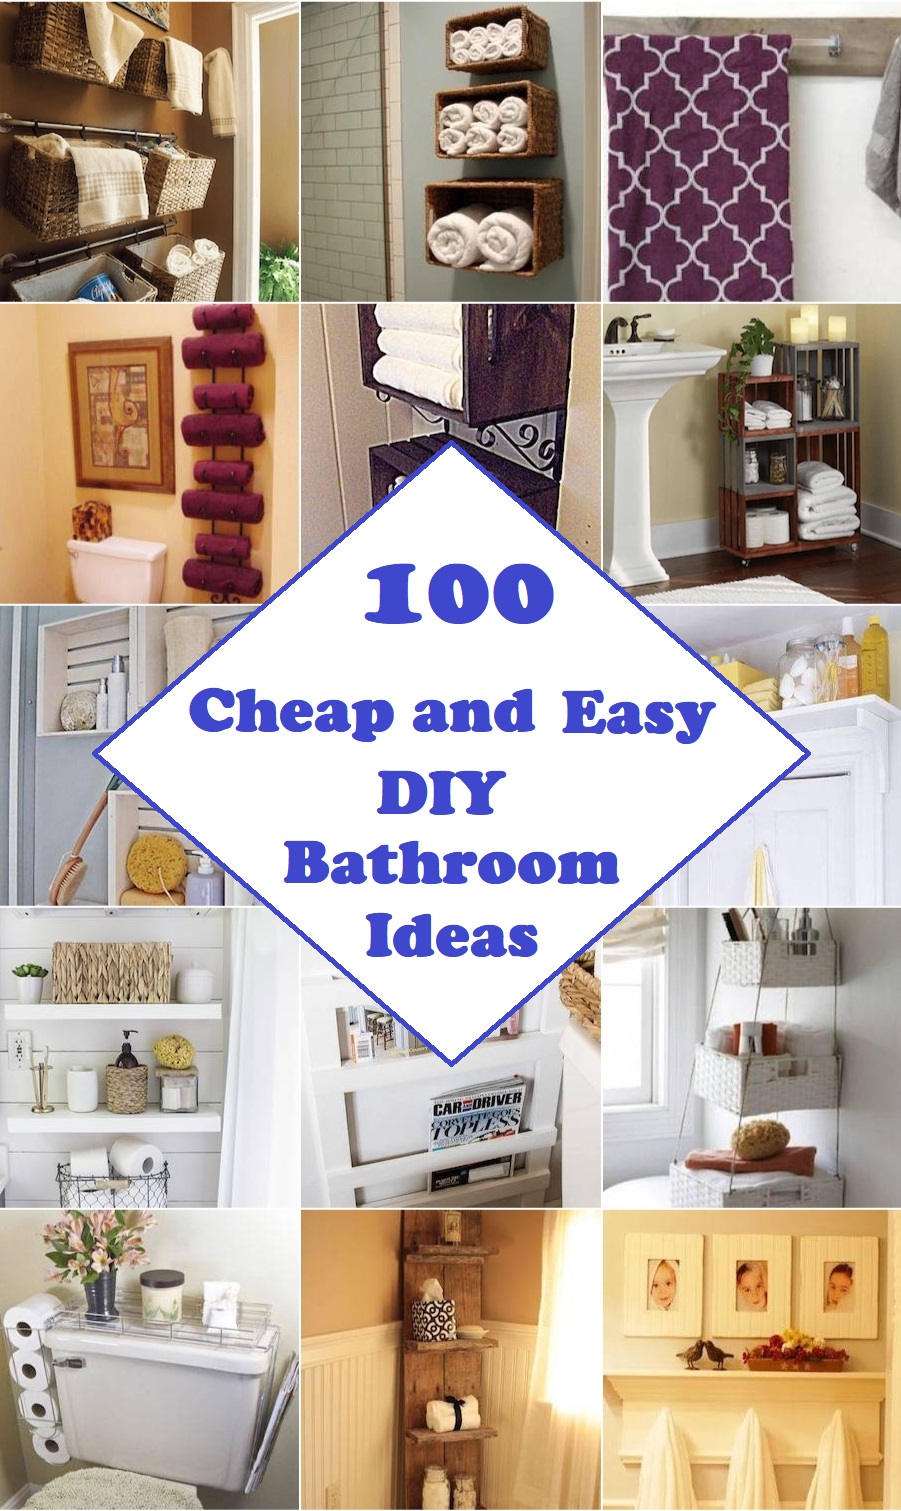 100 Cheap and Easy DIY Bathroom Ideas